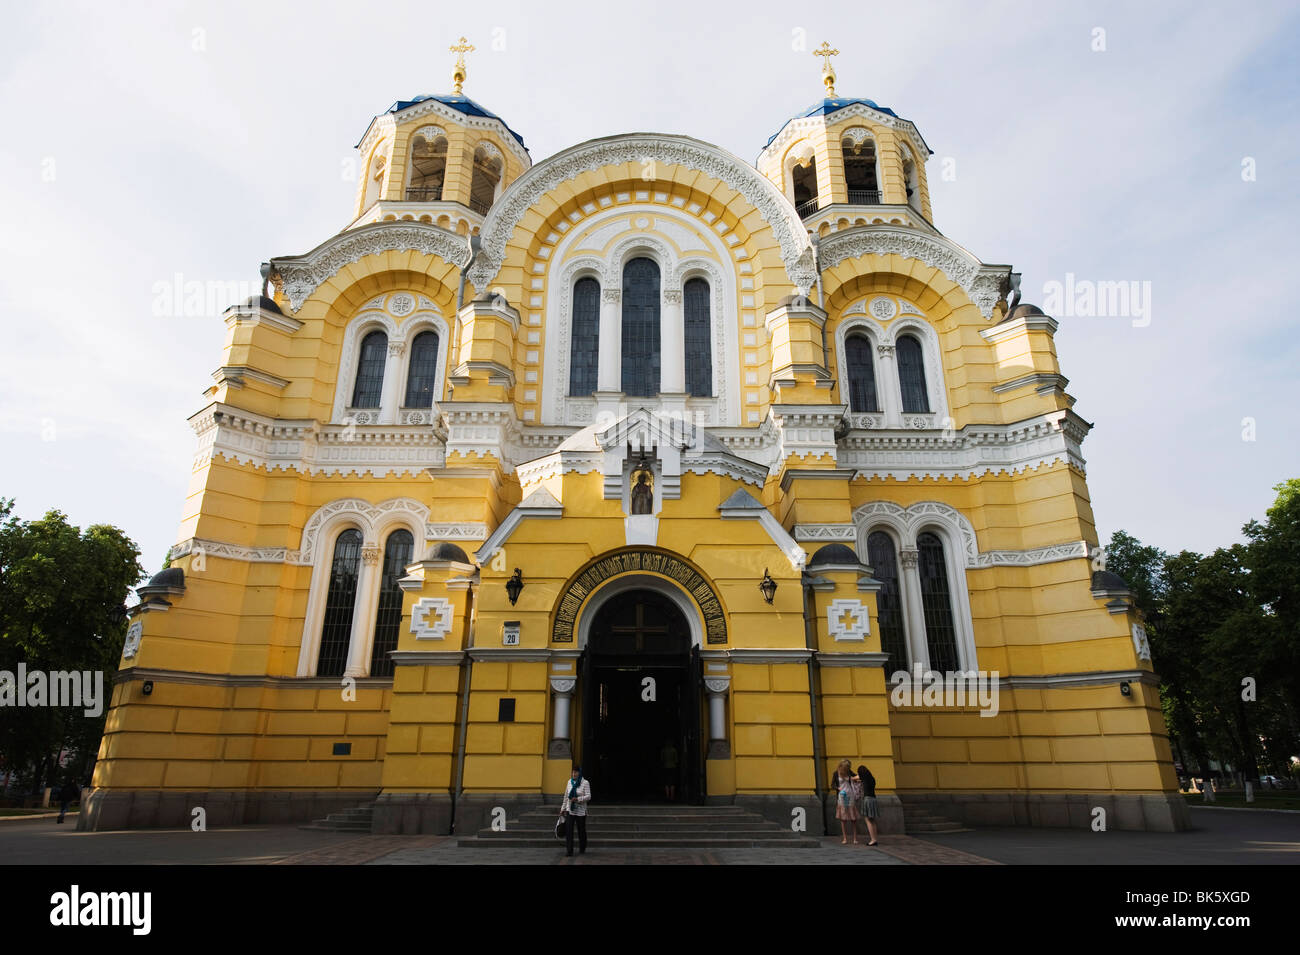 La Cathédrale Saint-vladimir, fin du xixe siècle de style byzantin chrétien orthodoxe, Kiev, Ukraine, l'Europe Banque D'Images